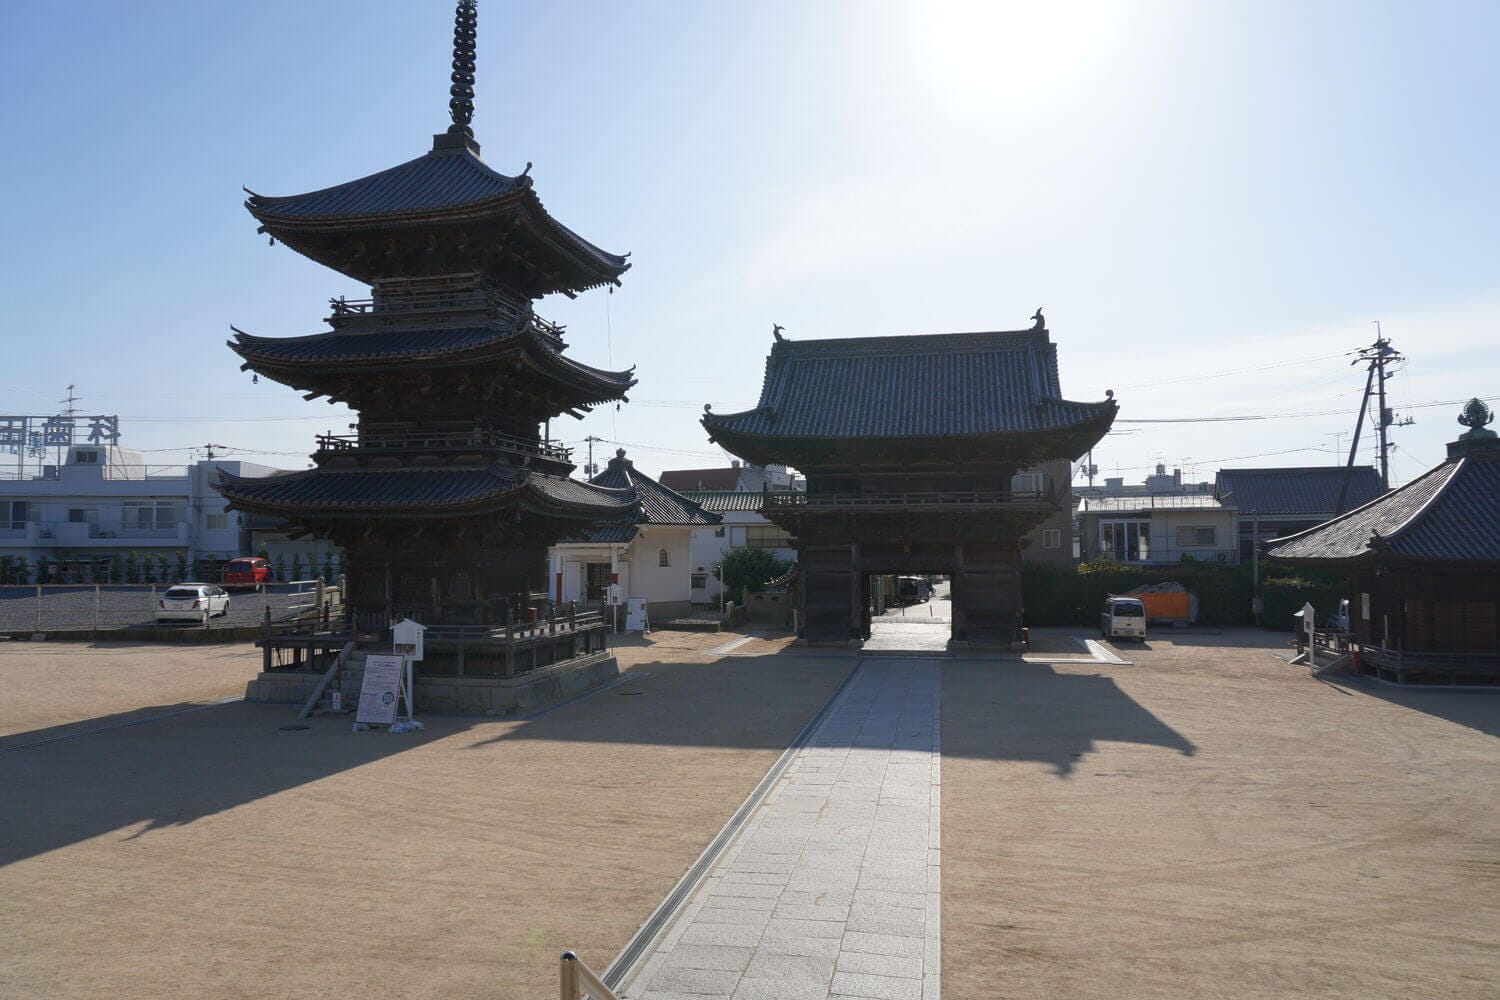 日本三大奇祭の西大寺観音院と五福を授かるレトロな町並みの画像